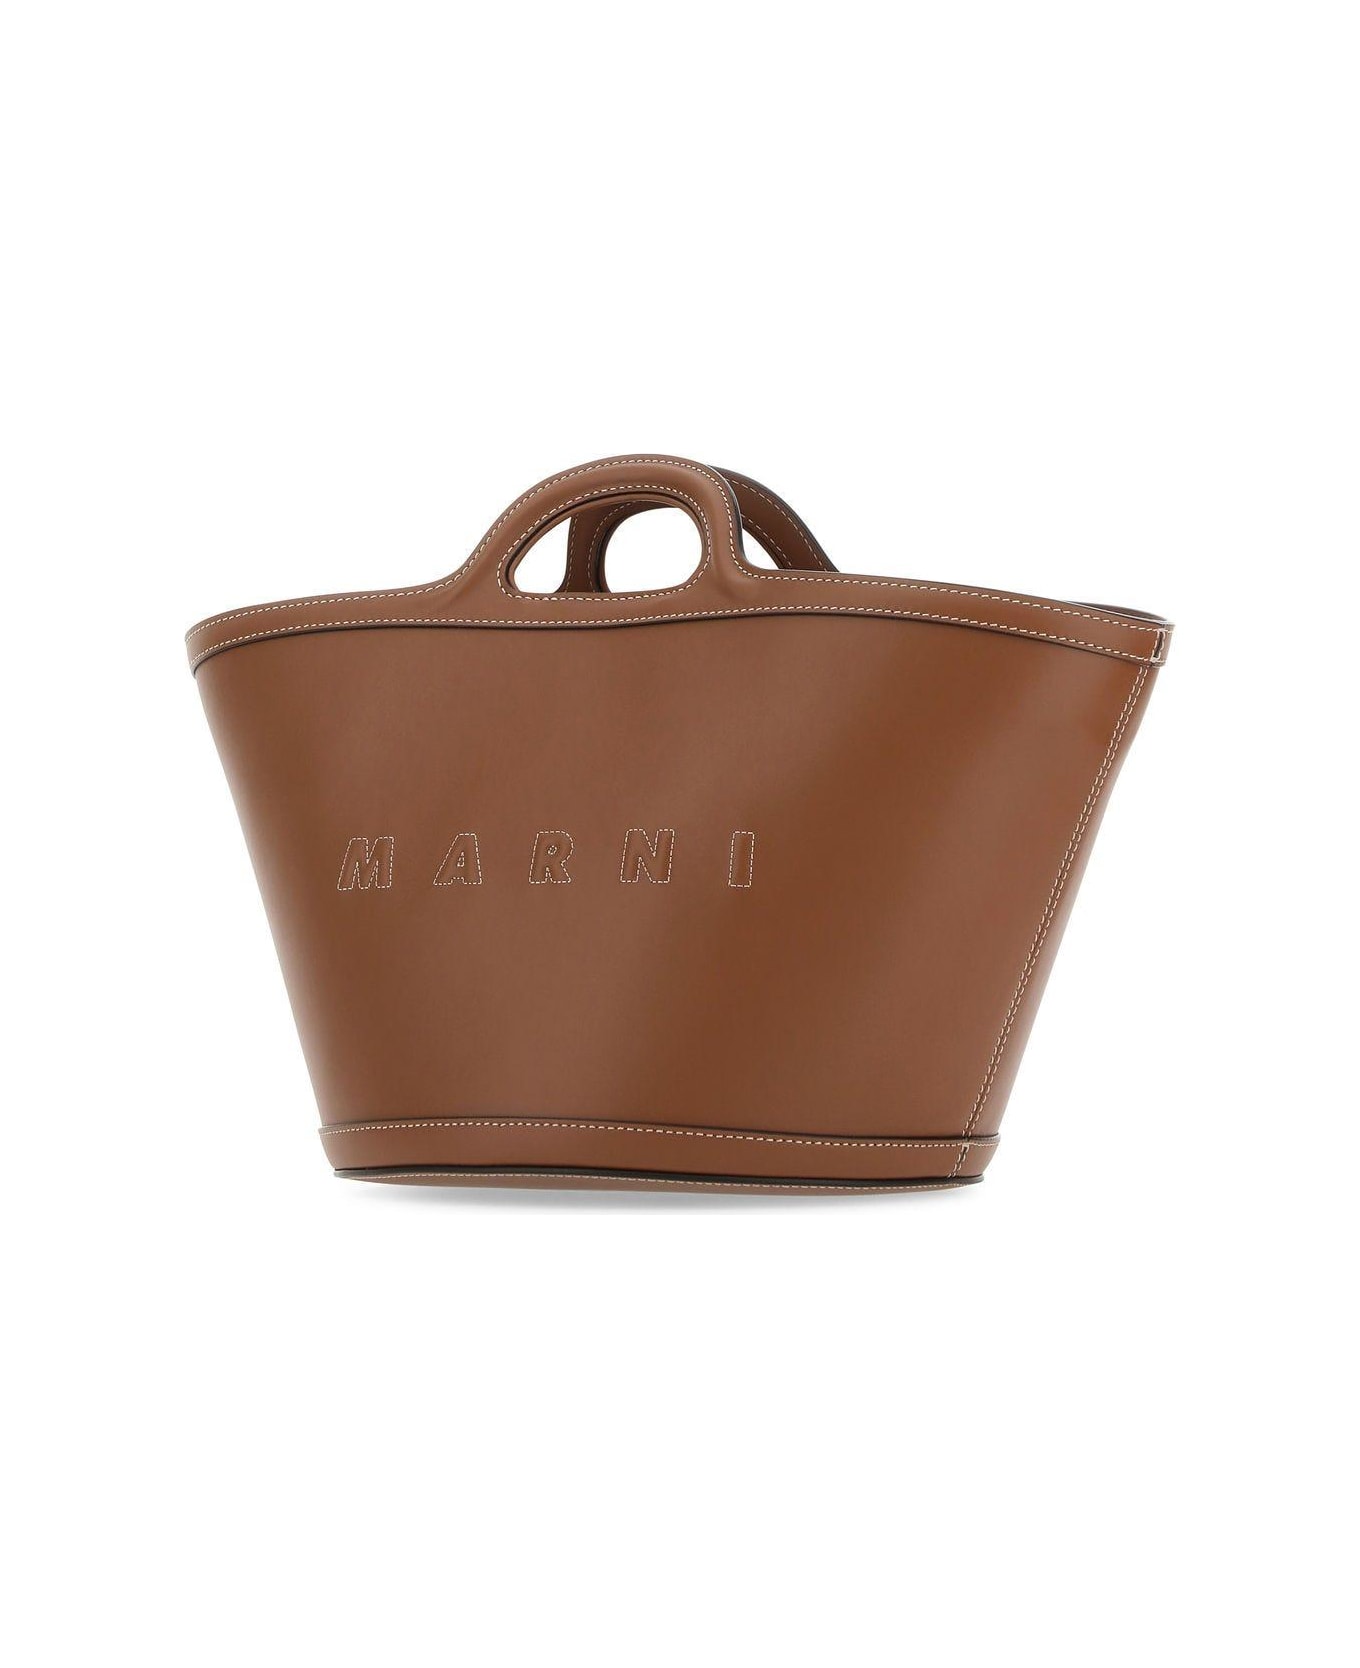 Marni Brown Leather Small Tropicalia Handbag - BROWN